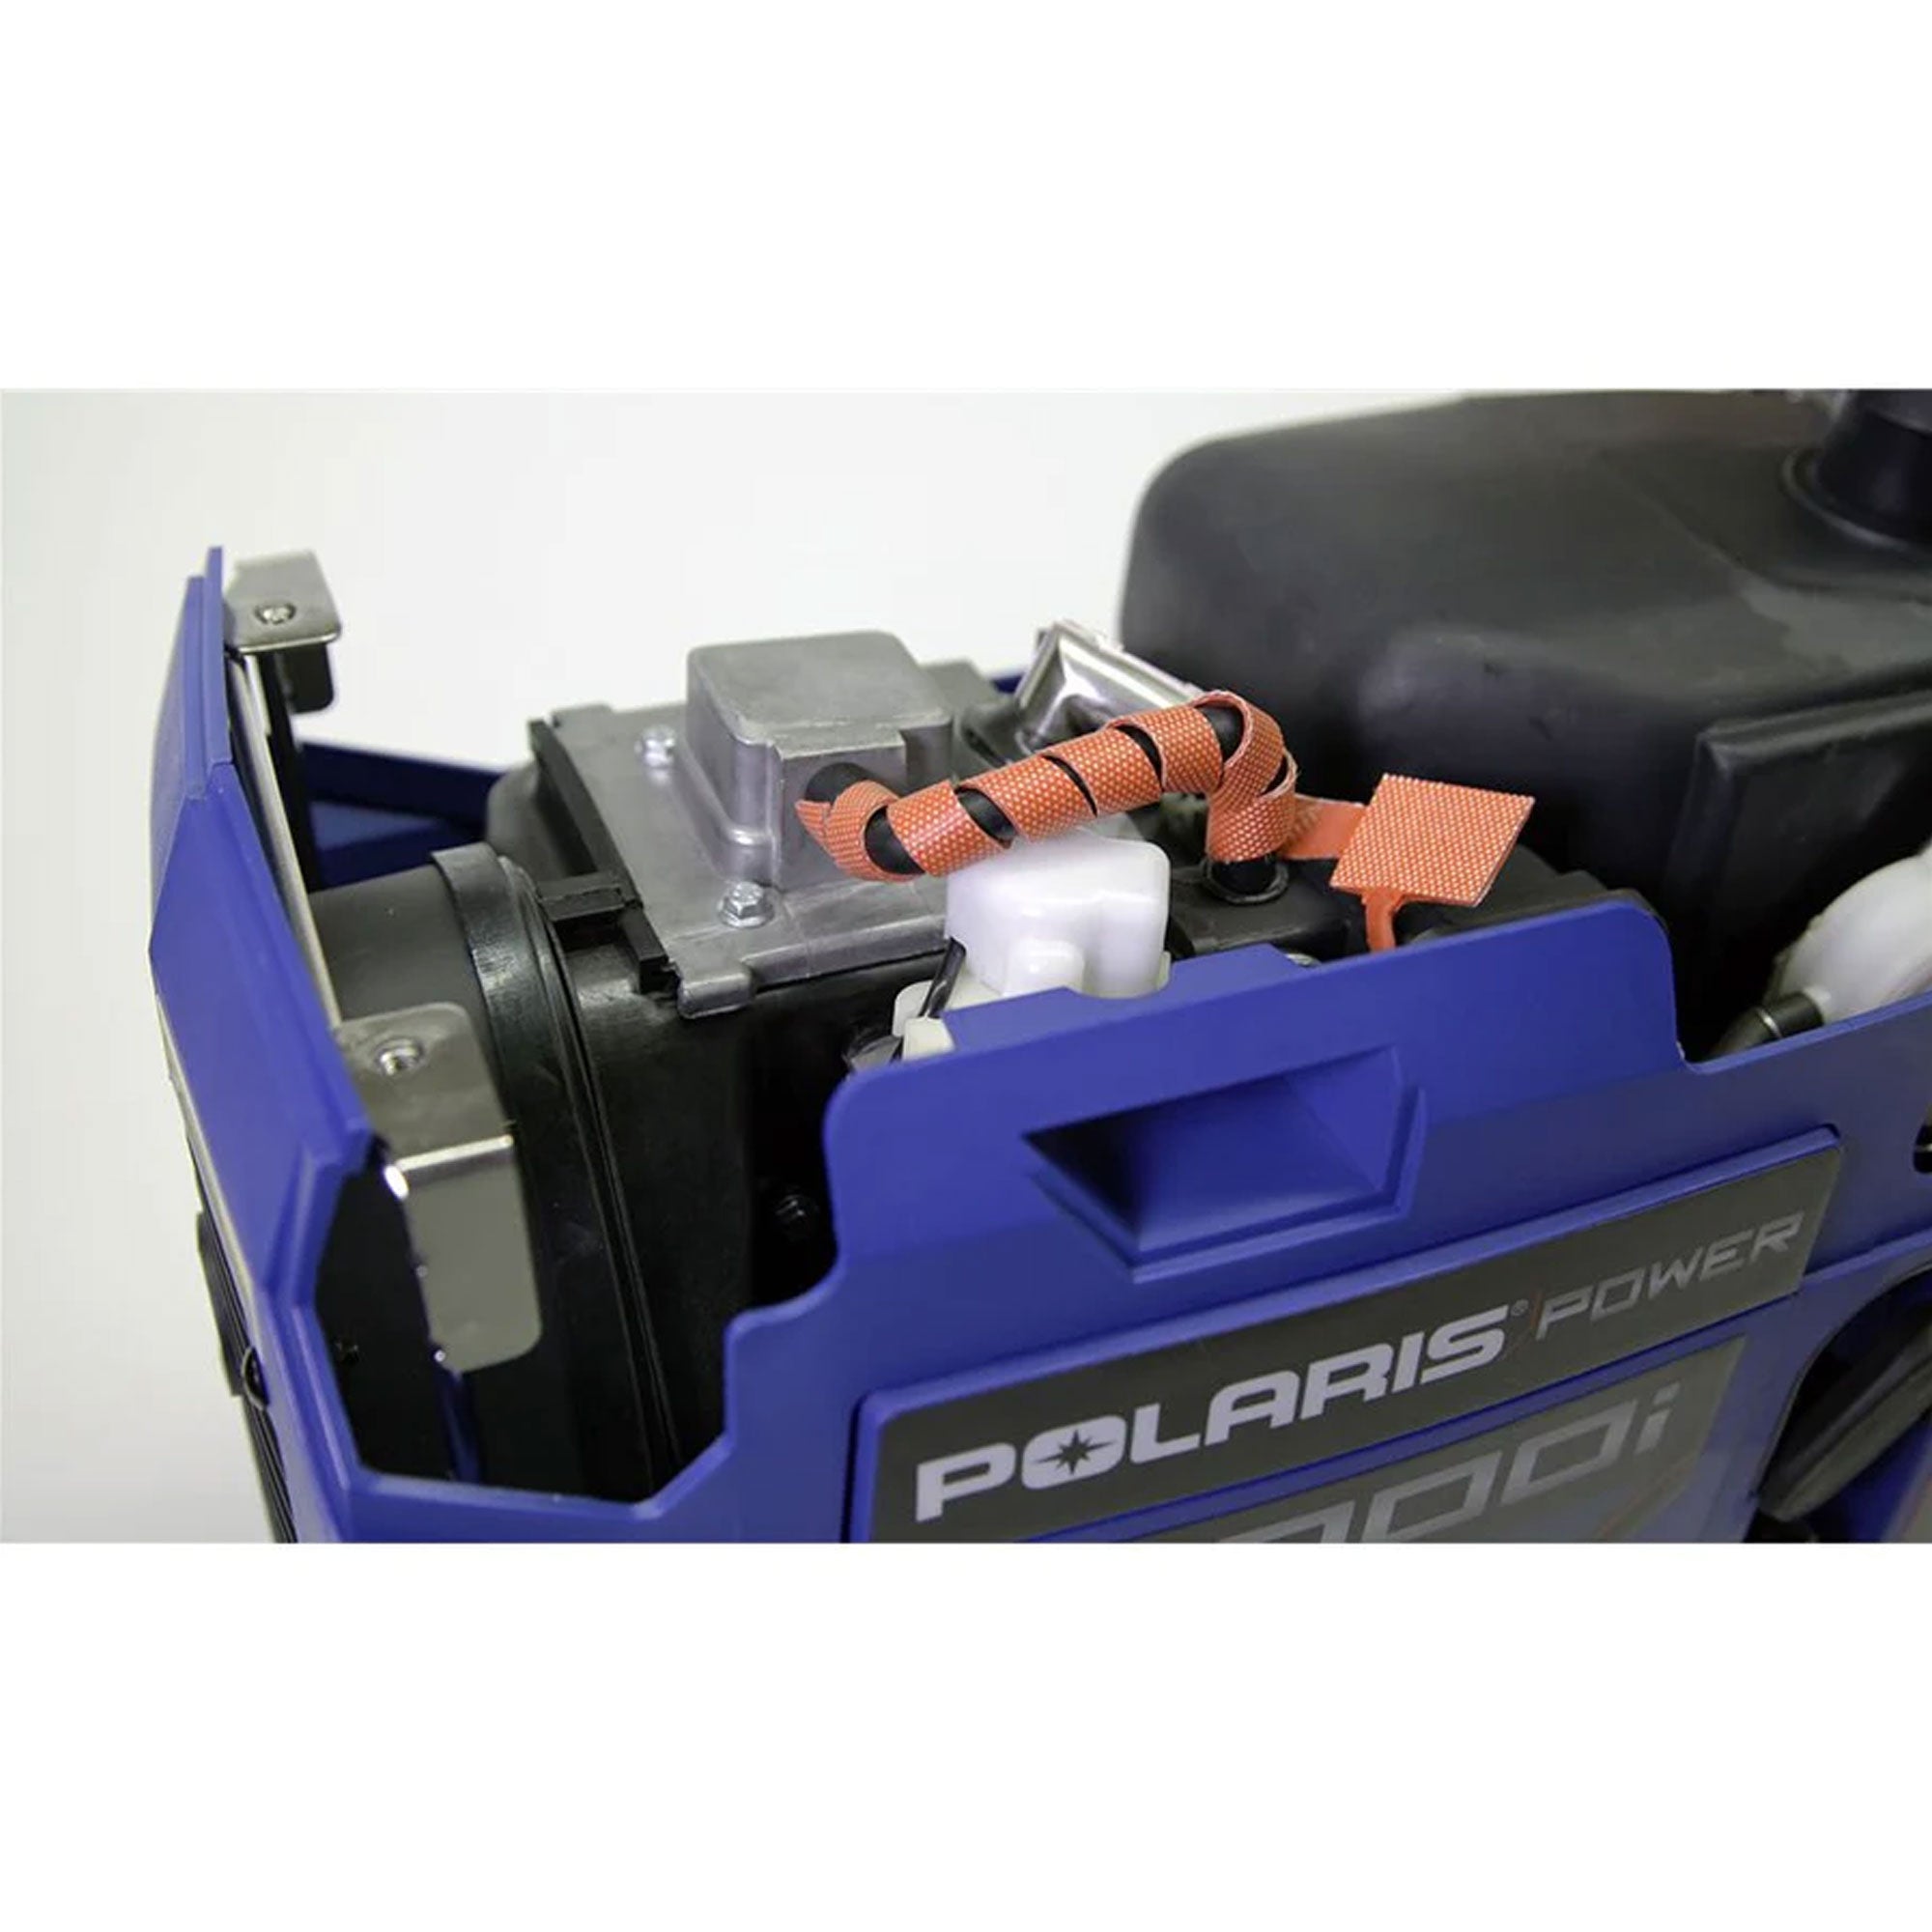 Polaris 2881433 Generator